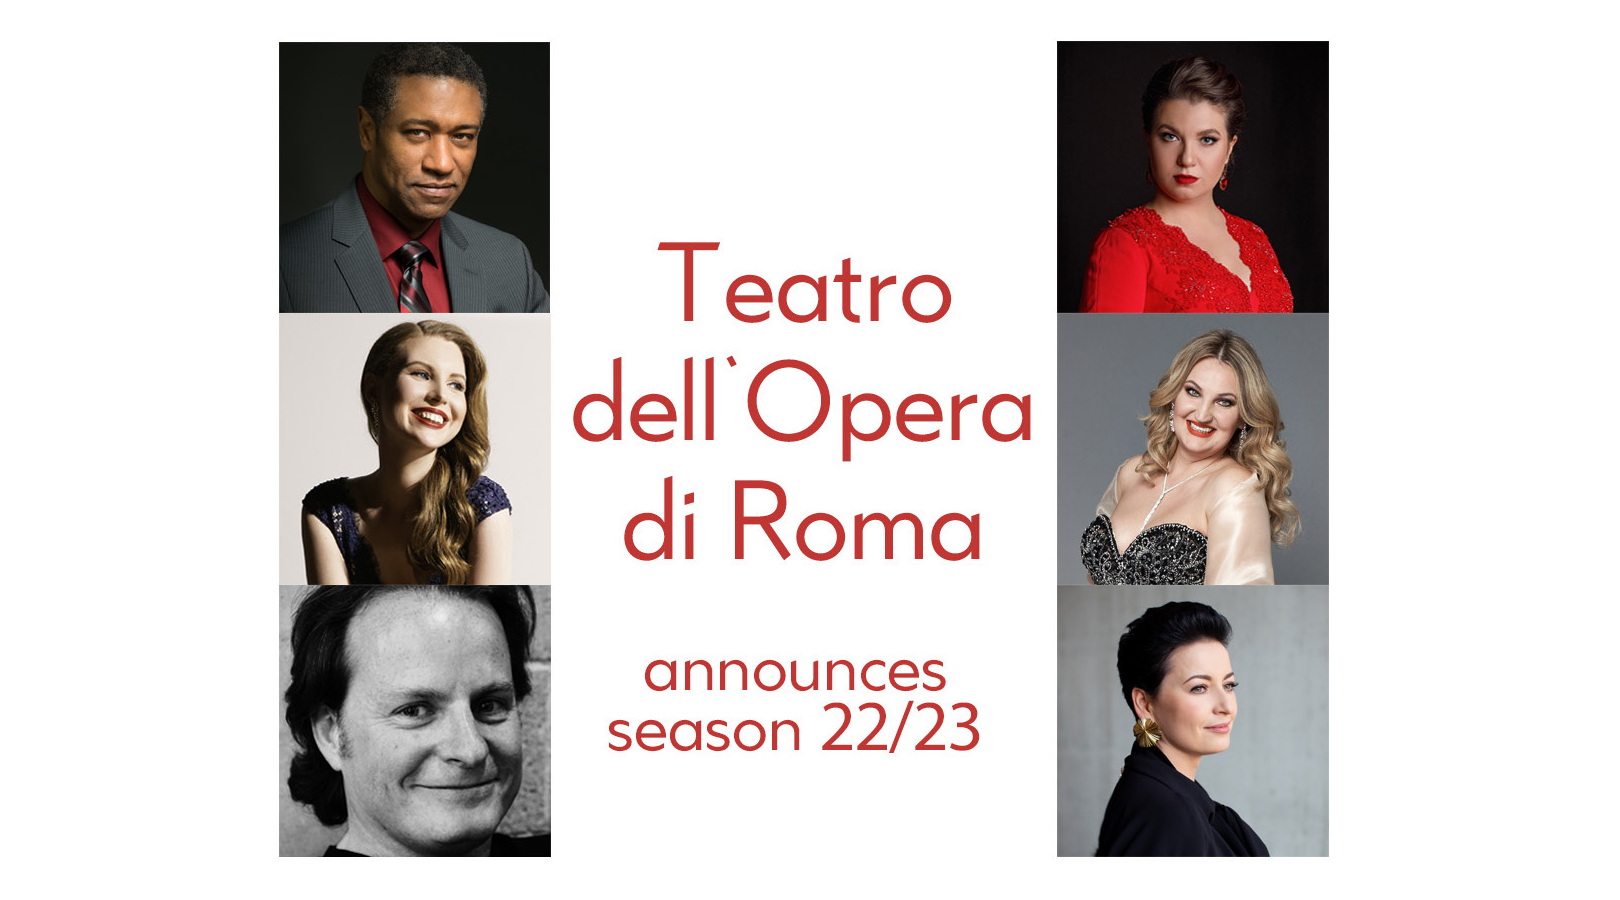 New Season at Teatro dell'Opera di Roma is announced 